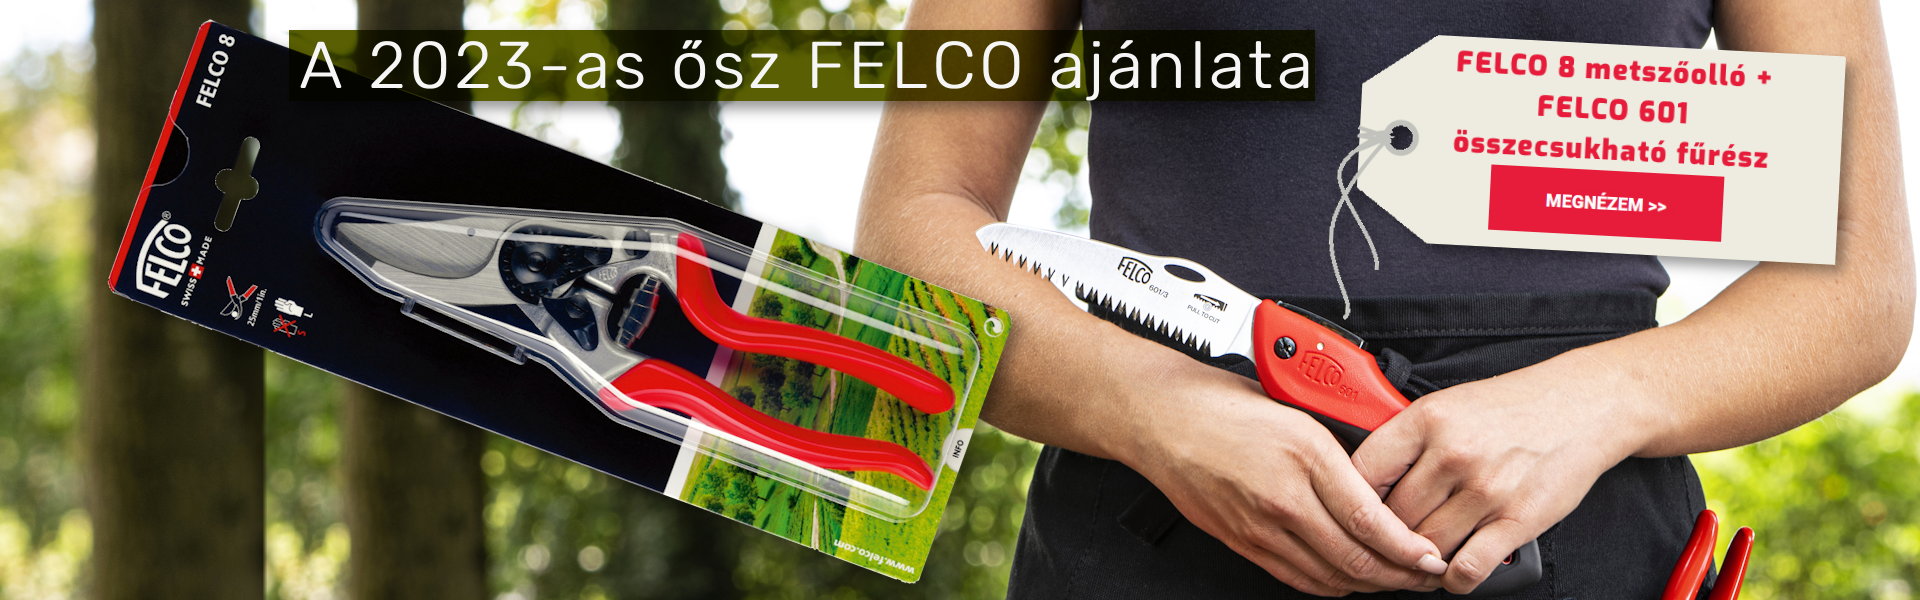 FELCO 8 metszőolló + FELCO 601 összecsukható ágfűrész